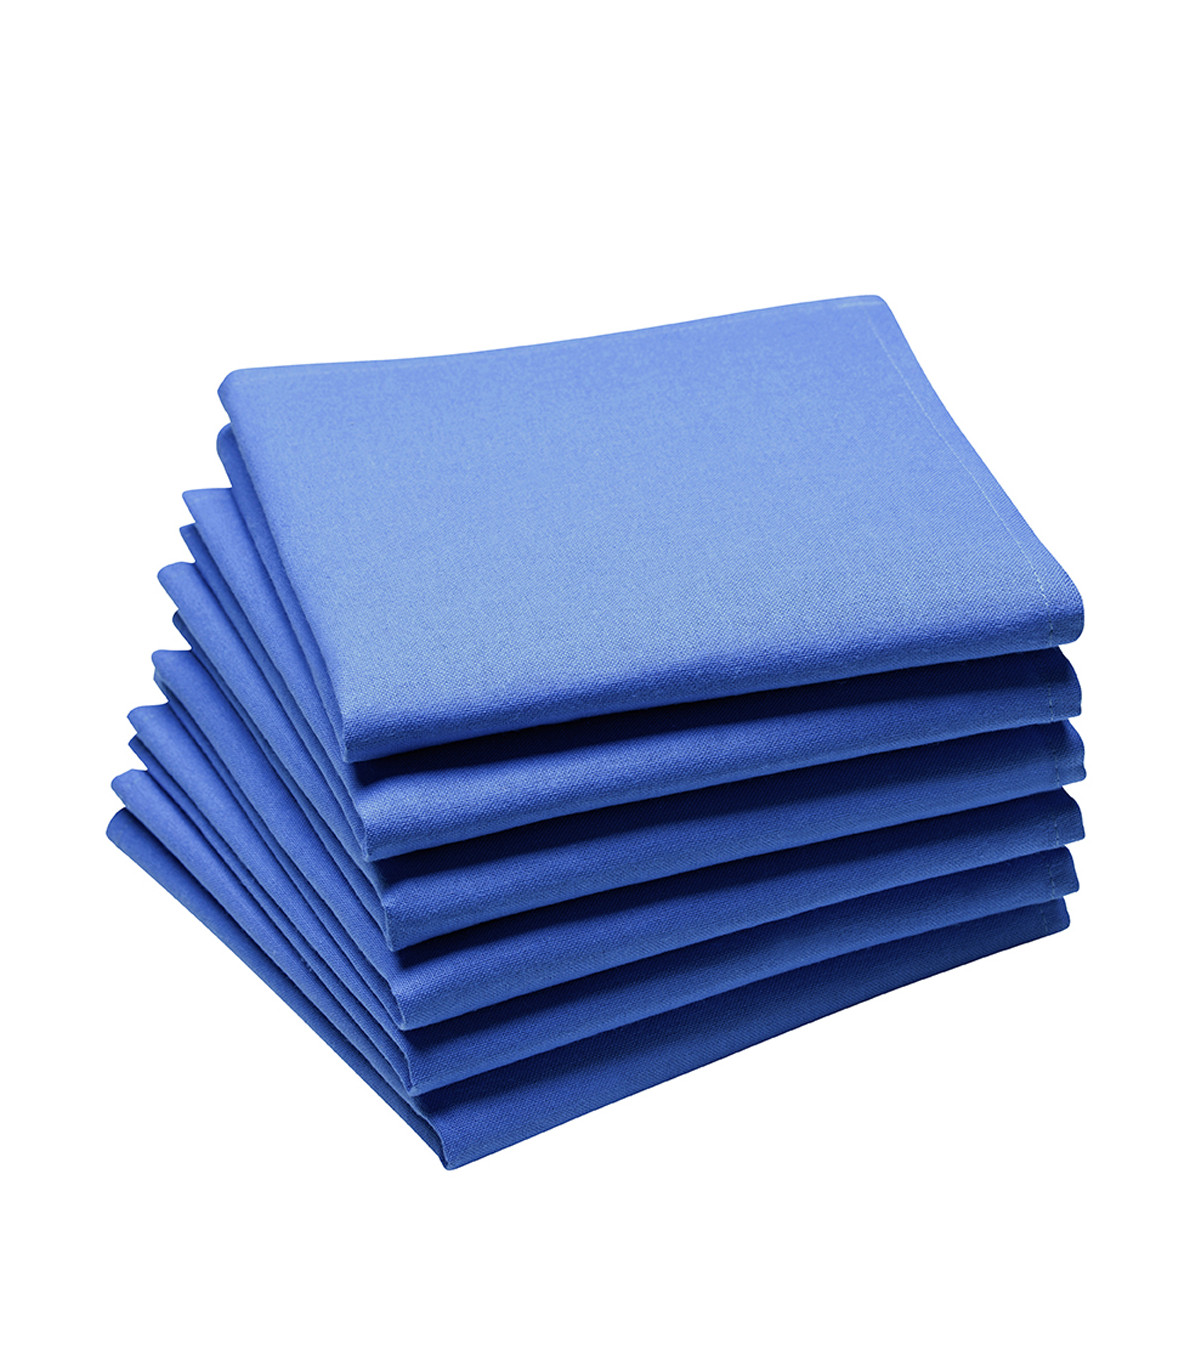 Jolie serviette de table personnalisée couleur bleu brodée a